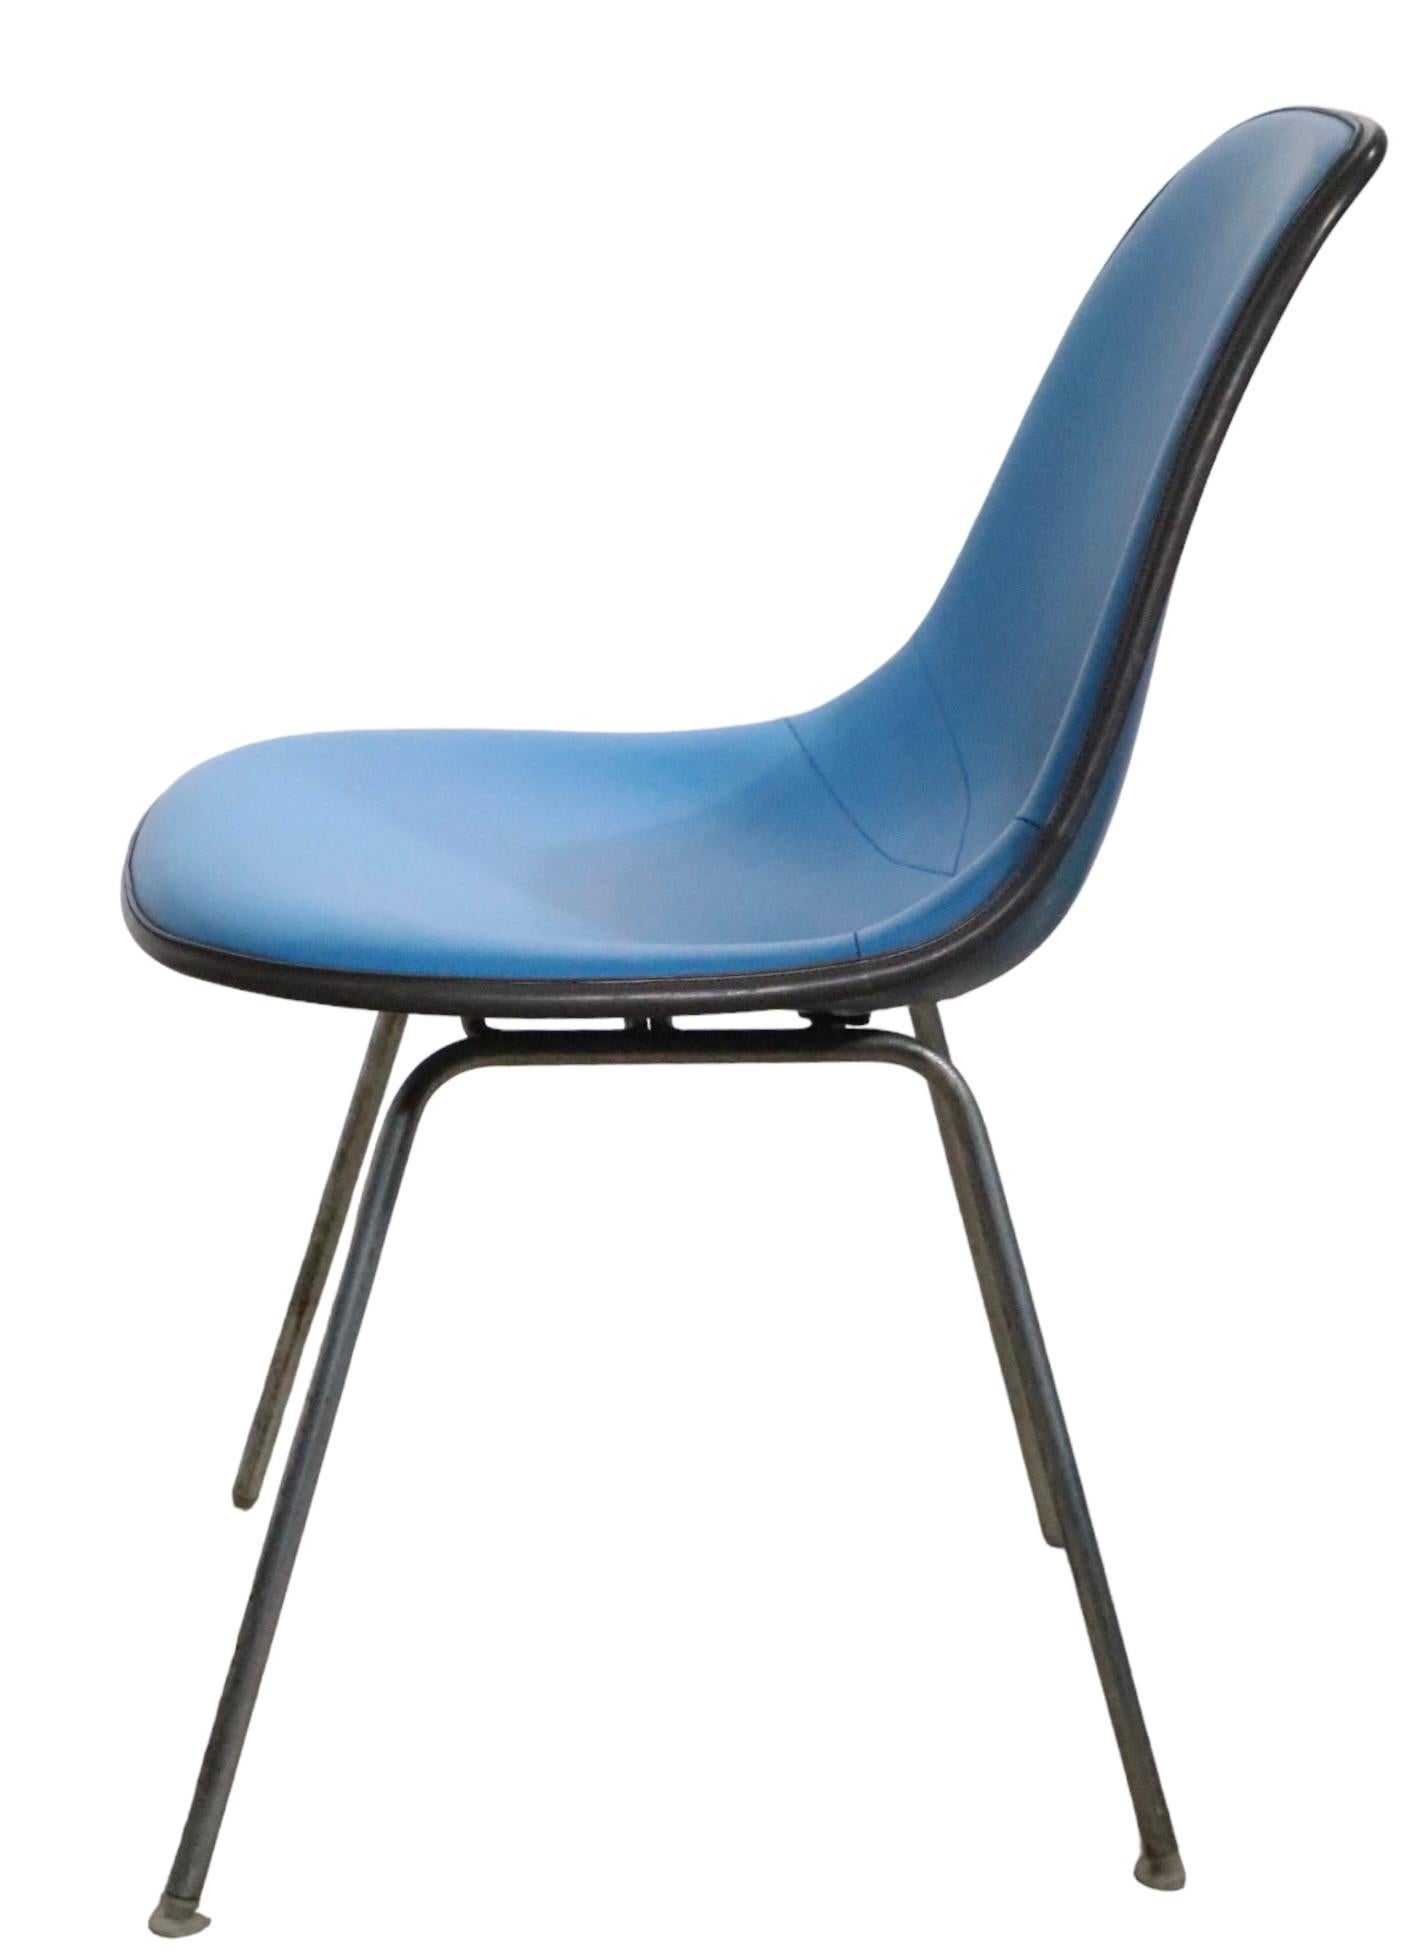 Klassischer Eames DSX Stuhl mit original blauem Vinylbezug und schwarzer Zierleiste,  über einer blauen Glasfaserschale. Der Stuhl ist in sehr gutem, originalem, sauberem und gebrauchsfertigem Zustand, die Plastikfußgleiter sind vorhanden, Photoshop